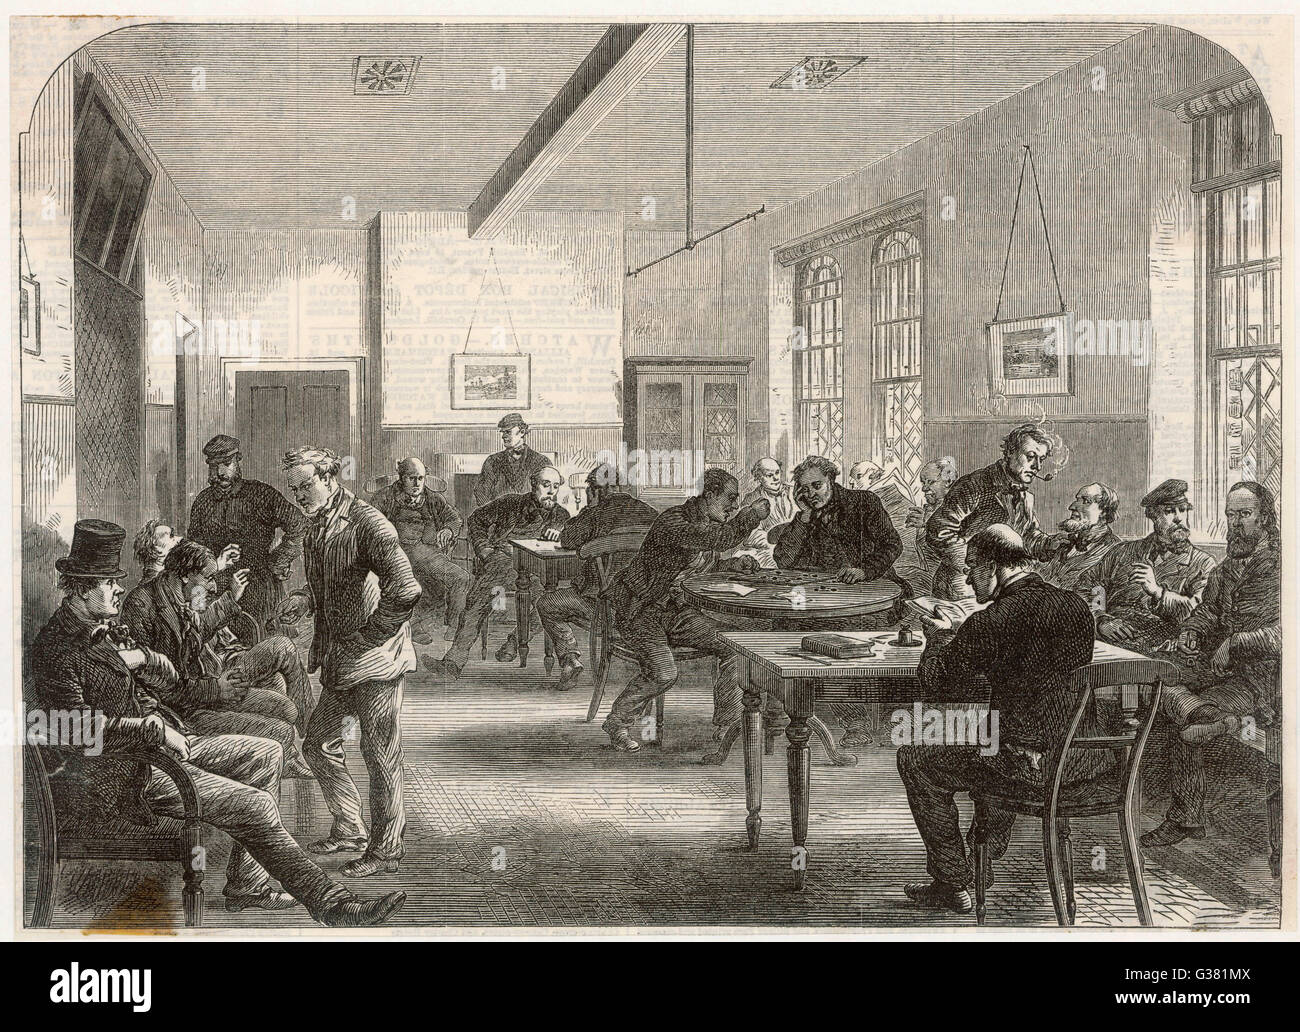 L'ASILE BROADMOOR - Men's salle de loisirs. Date : 1867 Banque D'Images